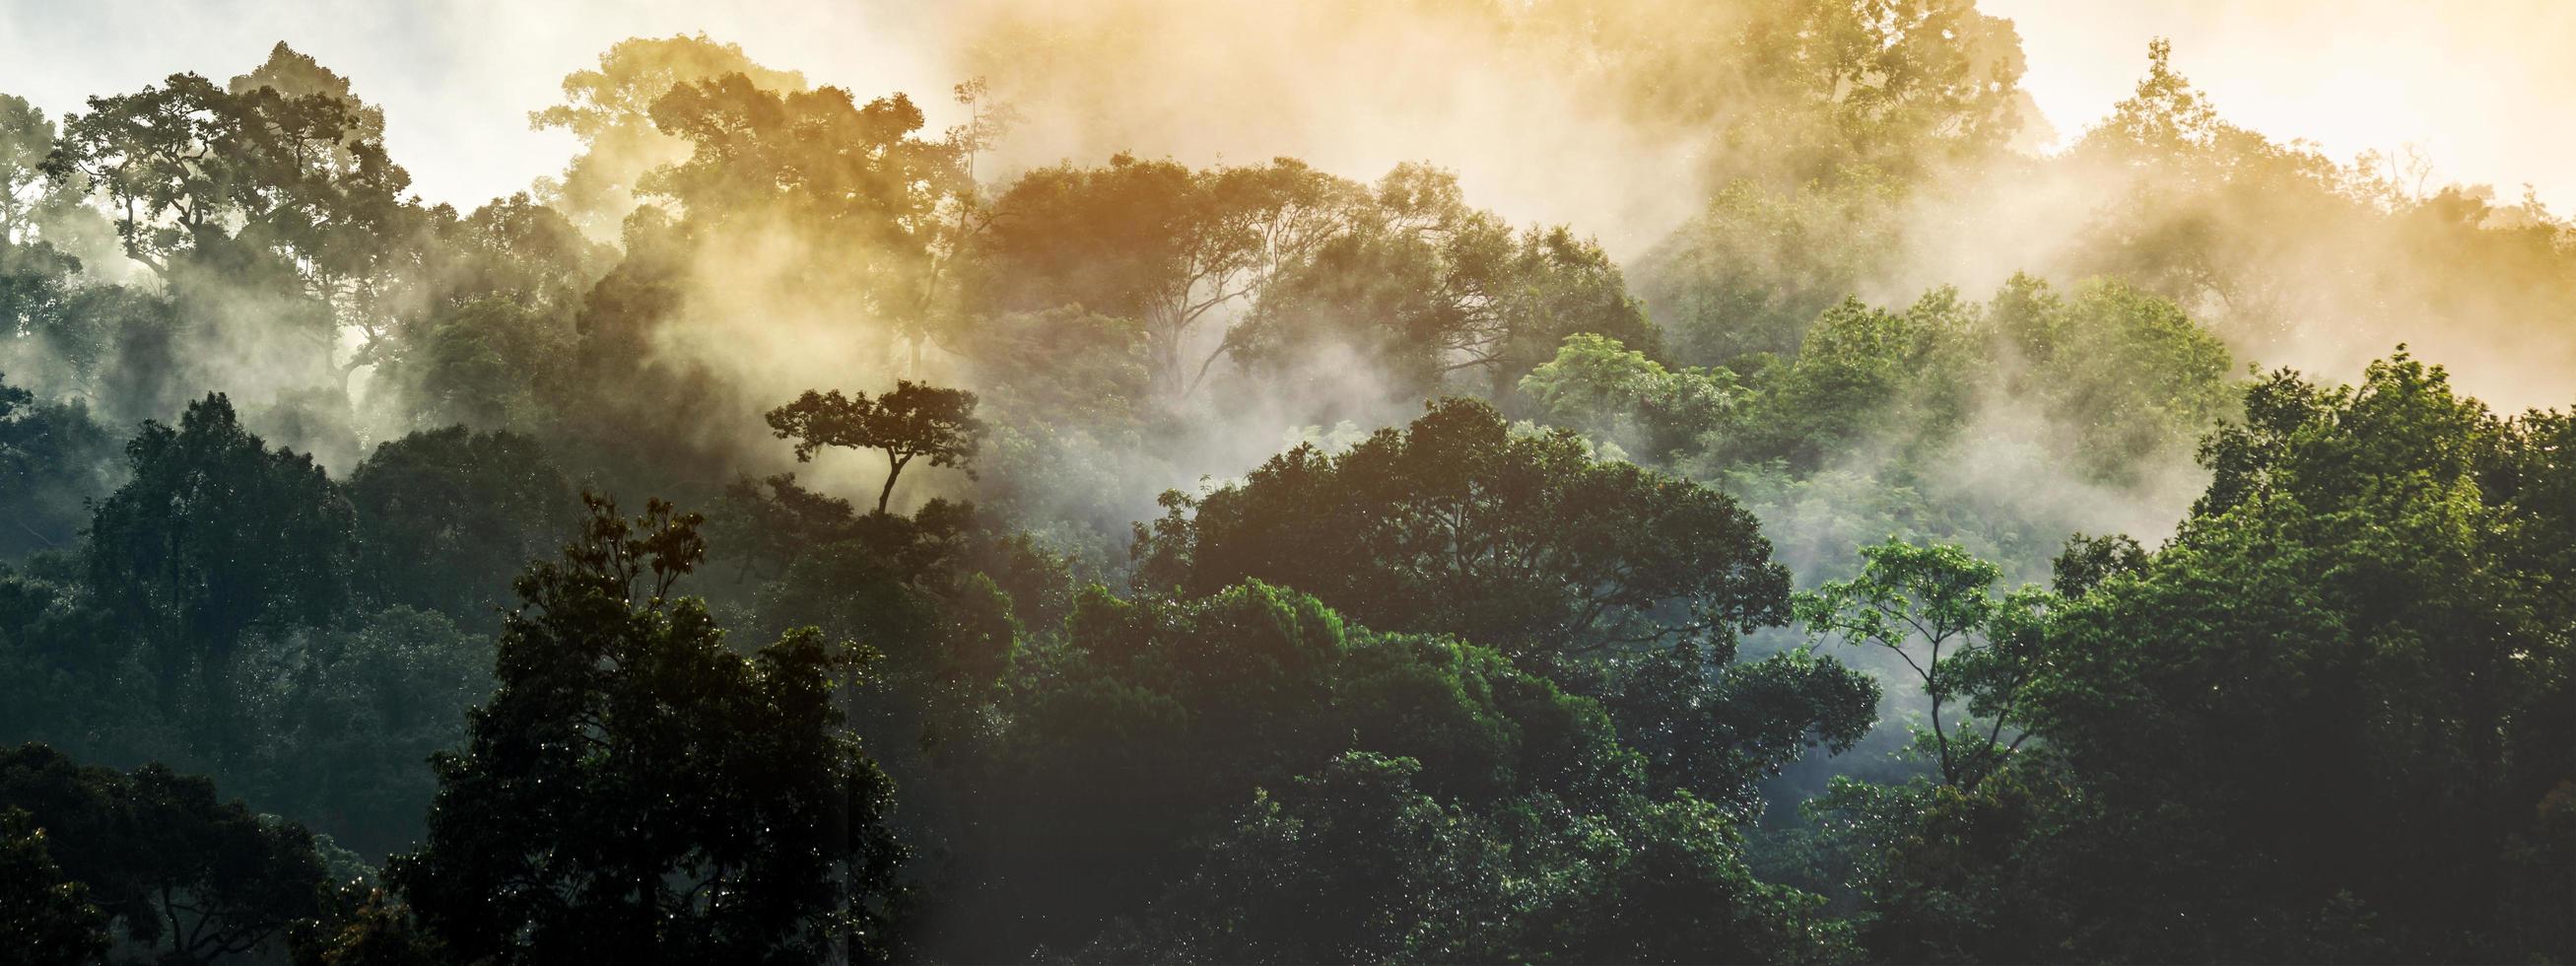 Panorama-Banner-Hintergrund der tropischen Waldlandschaftsszene für die Verwendung im Konzept der Umweltökologie und der nachhaltigen Energie oder des Tages der Erde, wildes Holz als szenische Verwendung für Tapeten von Spa und Tourismus foto